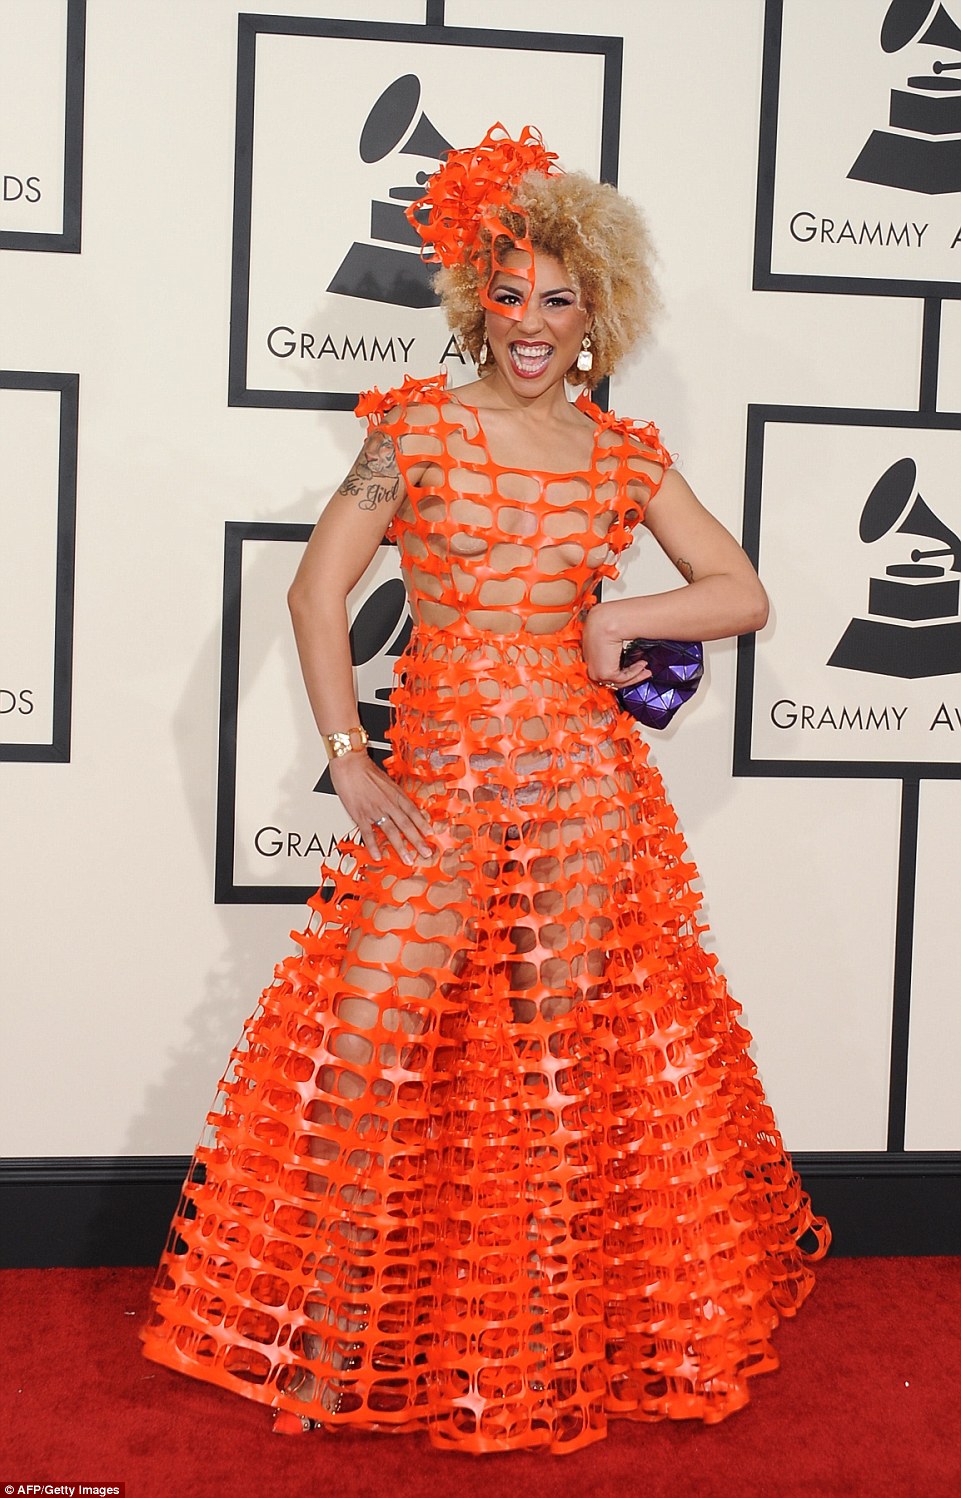 Joy Villa at the 2015 Grammys Awards red carpet